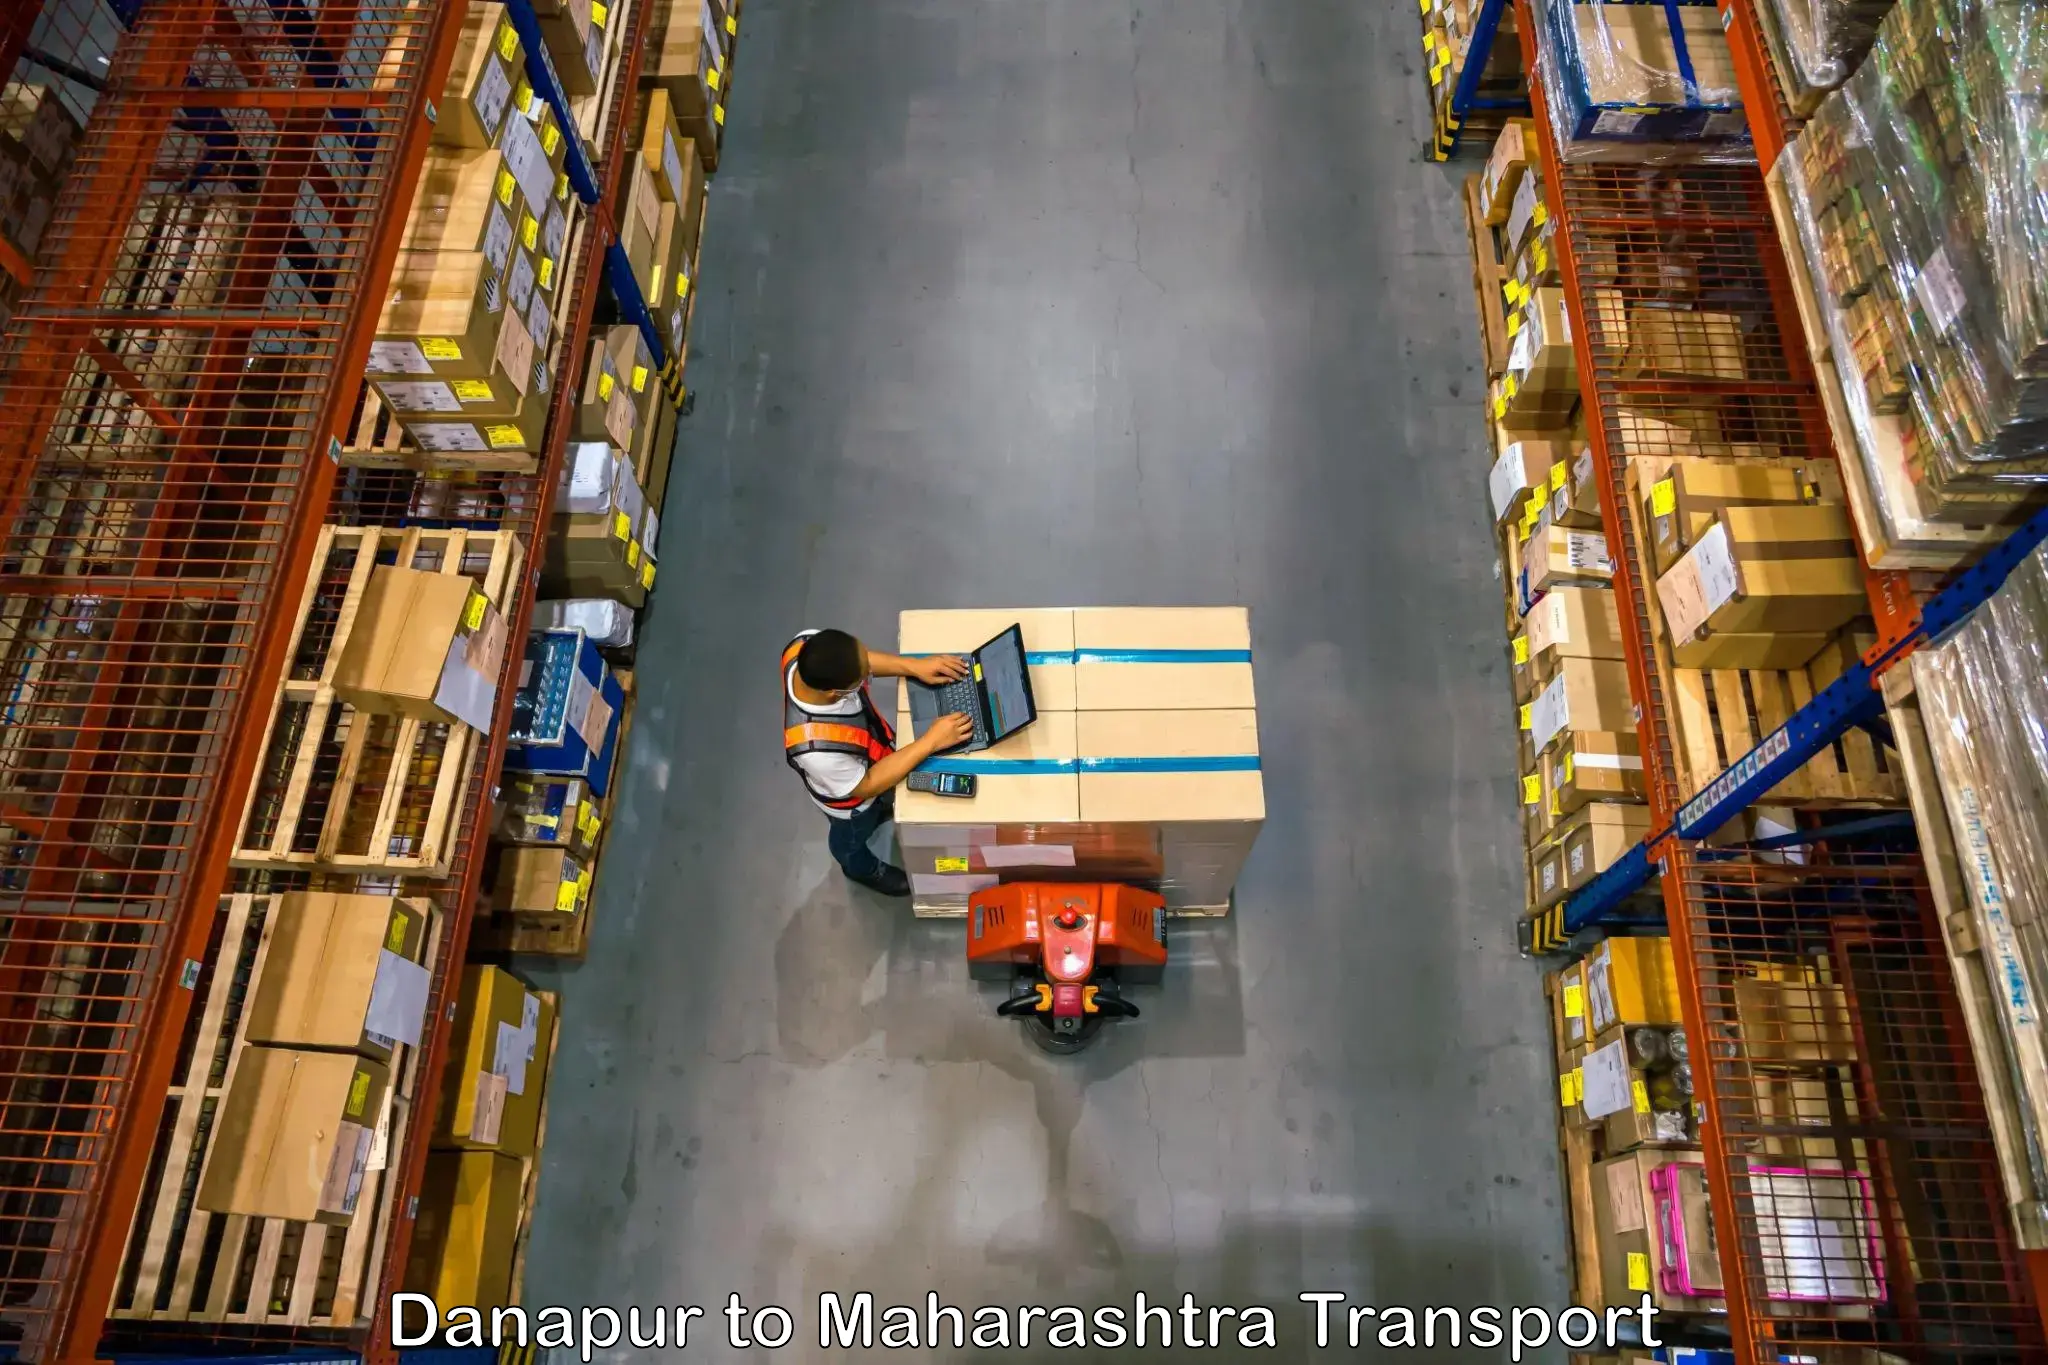 Truck transport companies in India Danapur to Lasalgaon